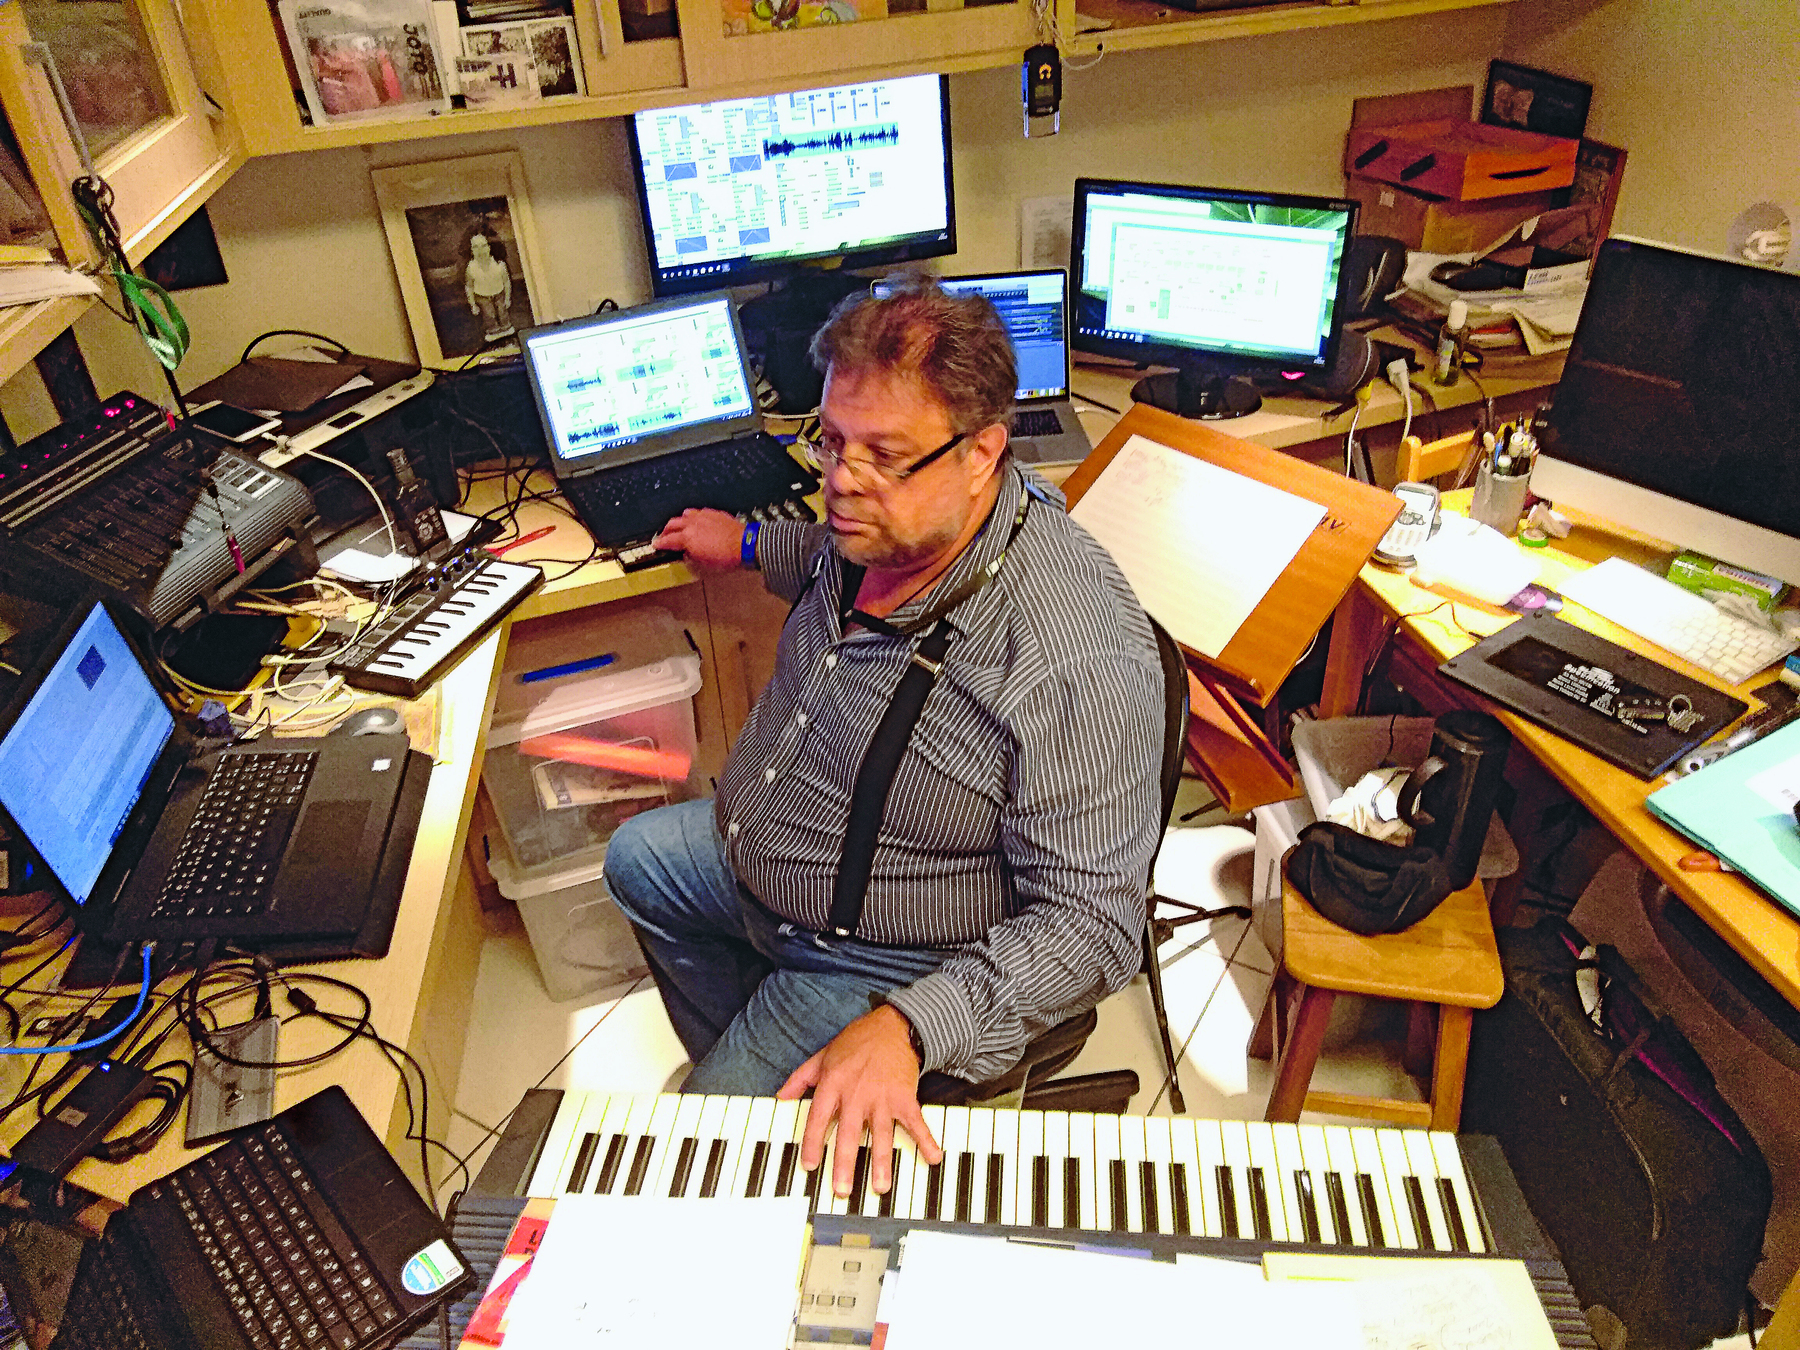 Fotografia. Homem de óculos com cabelo curto castanho, vestido com uma camisa com tons de cinza. Ele está sentado entre um teclado e telas de computadores, entre outros aparelhos eletrônicos.